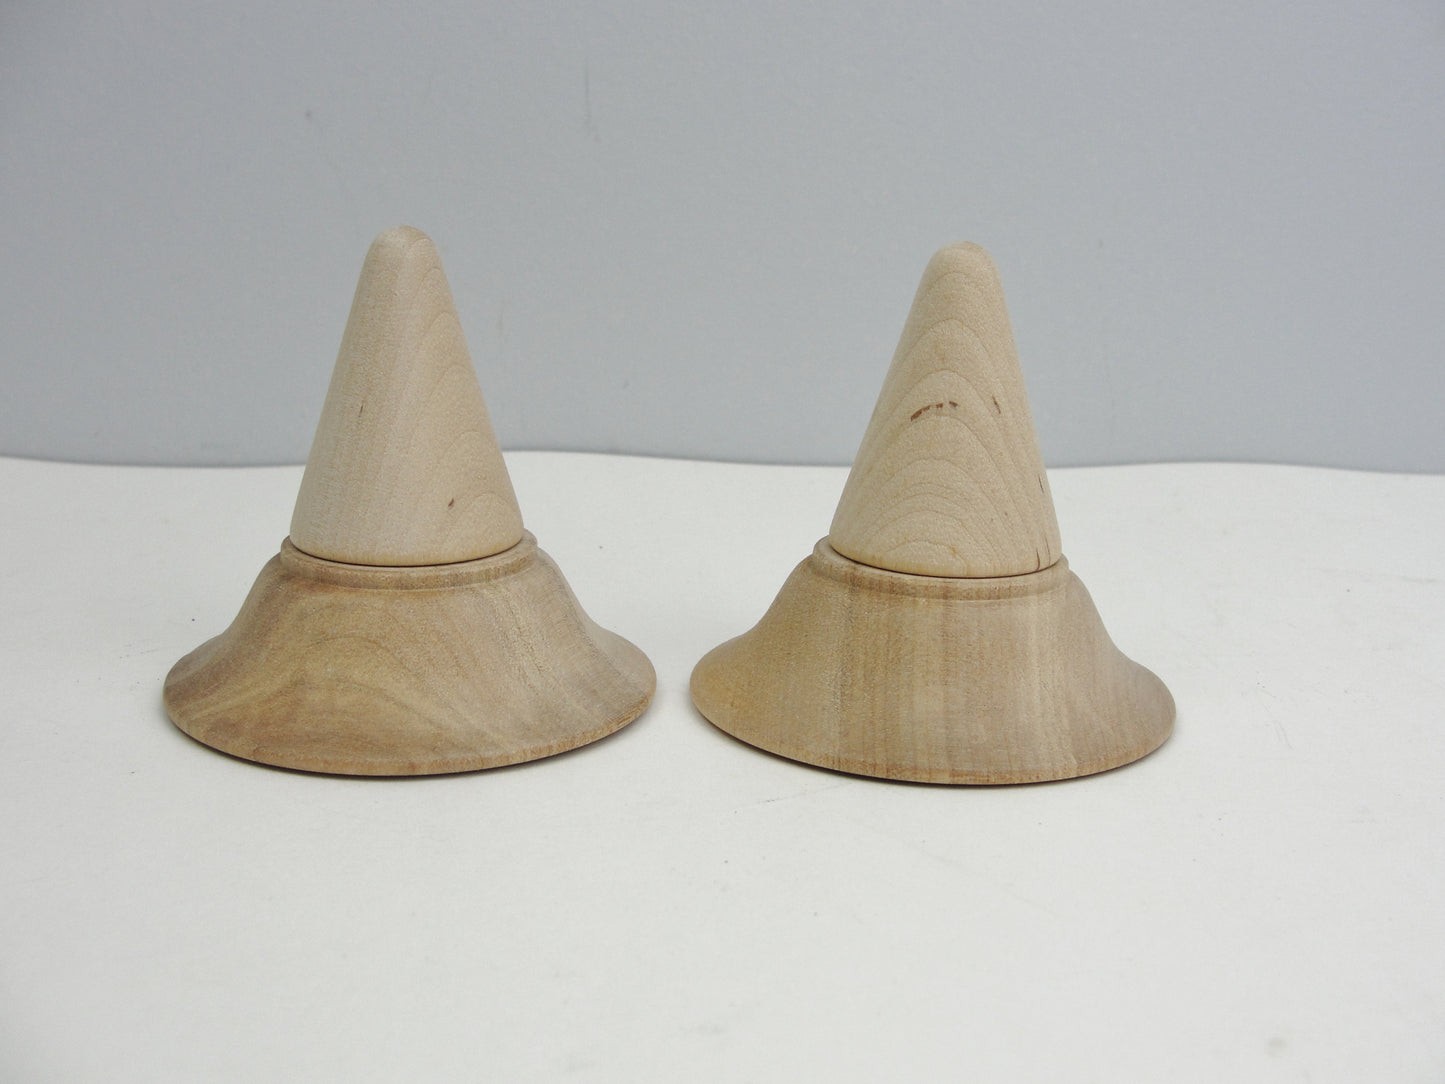 2 wooden "hats" for Deb Antonick pumpkin people